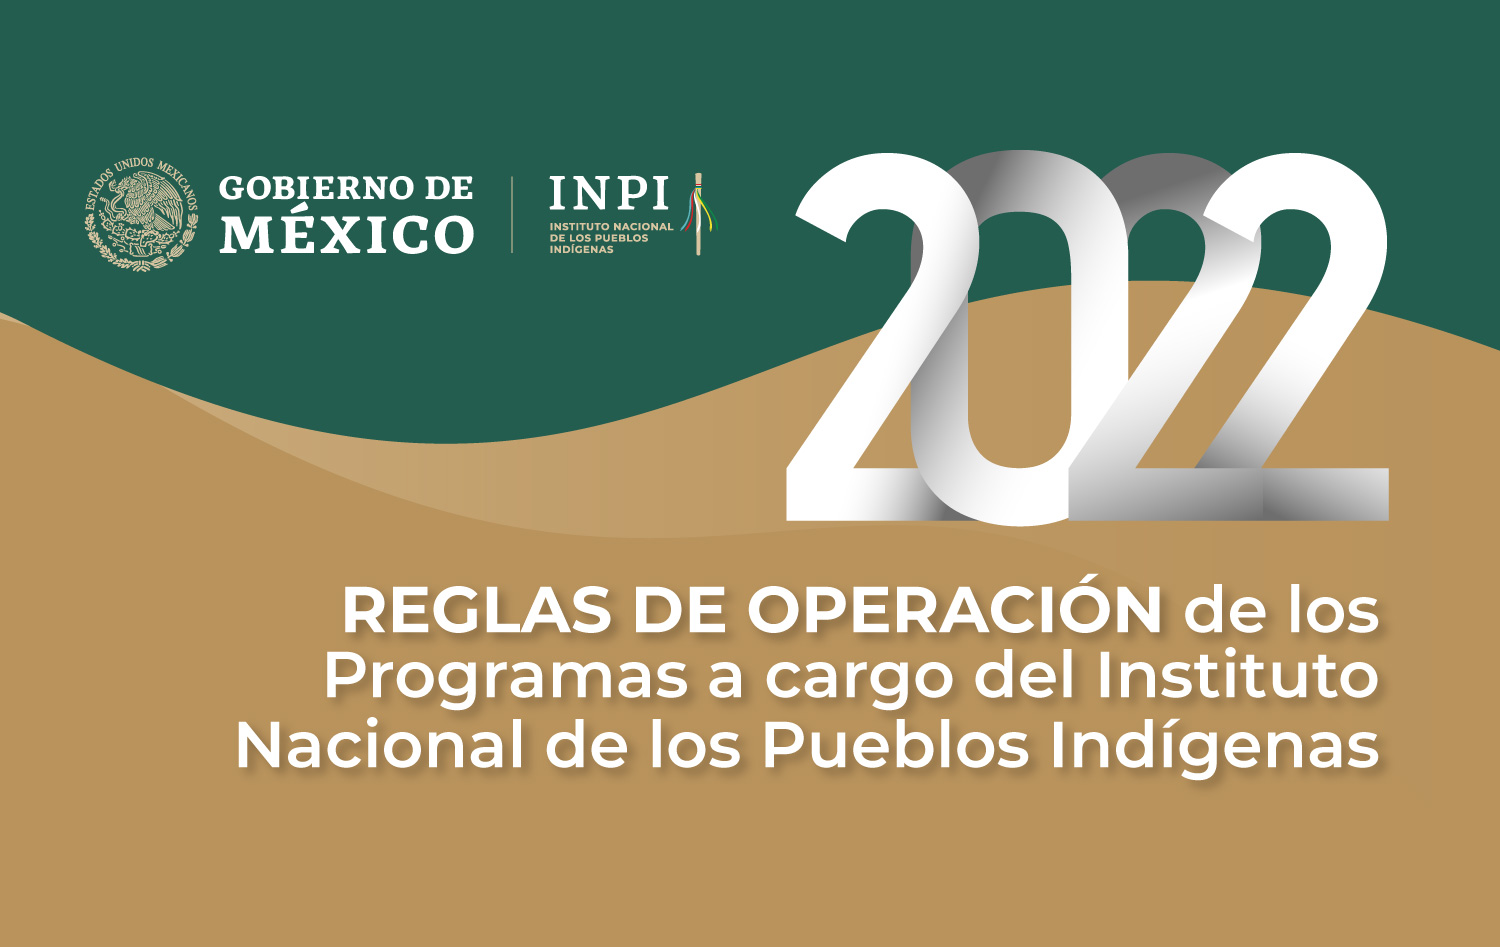 Reglas de Operación de los Programas a cargo del Instituto Nacional de los Pueblos Indígenas 2022.